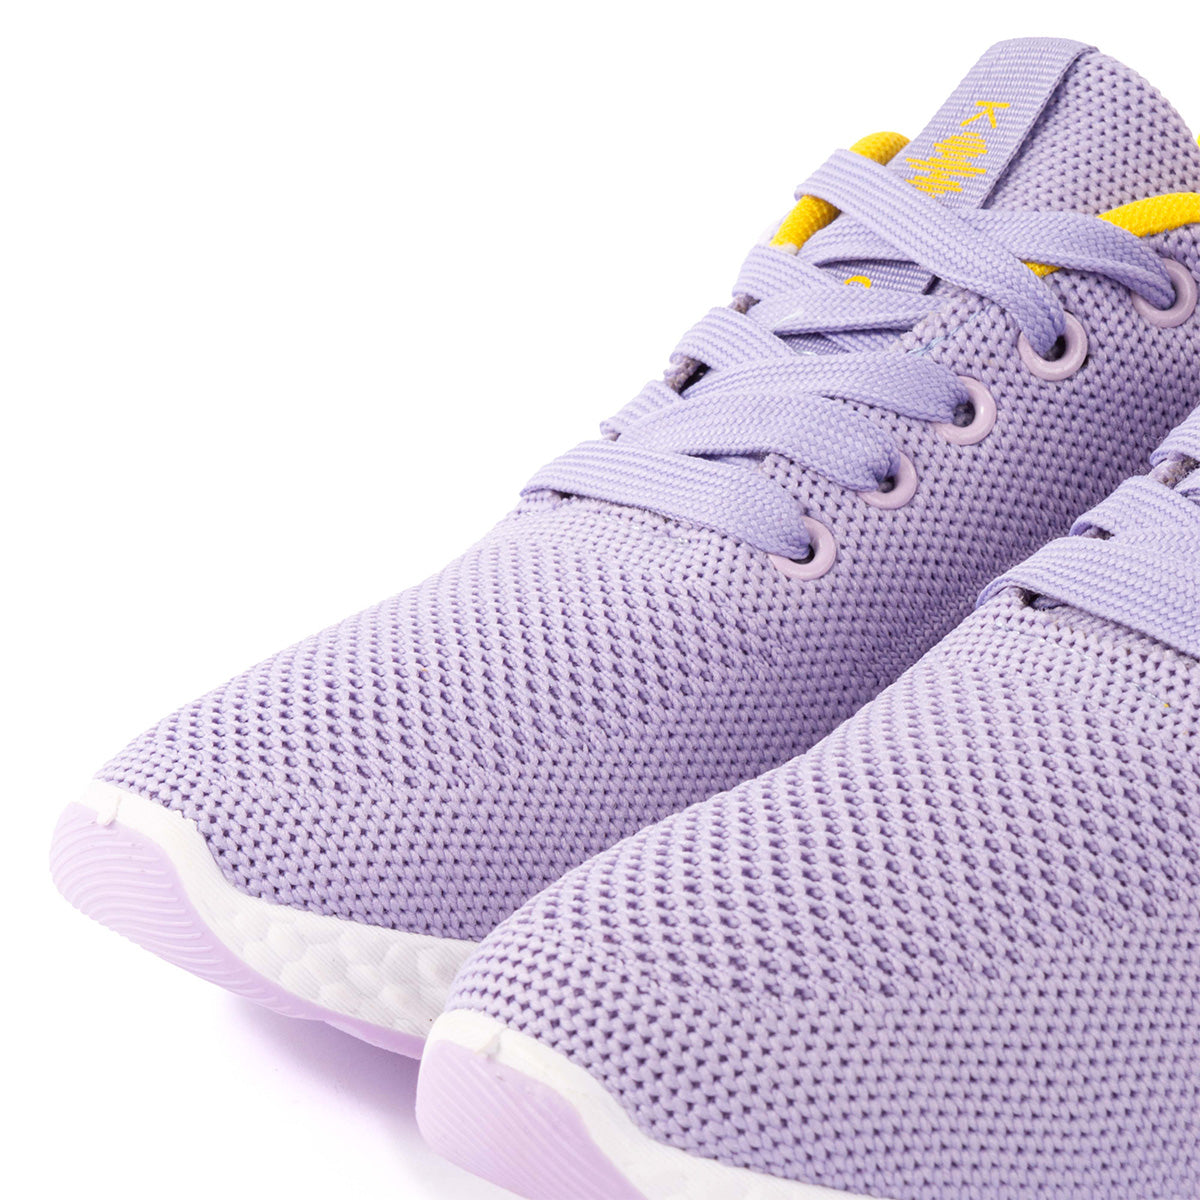 Tenis deportivos color lila en malla tejida